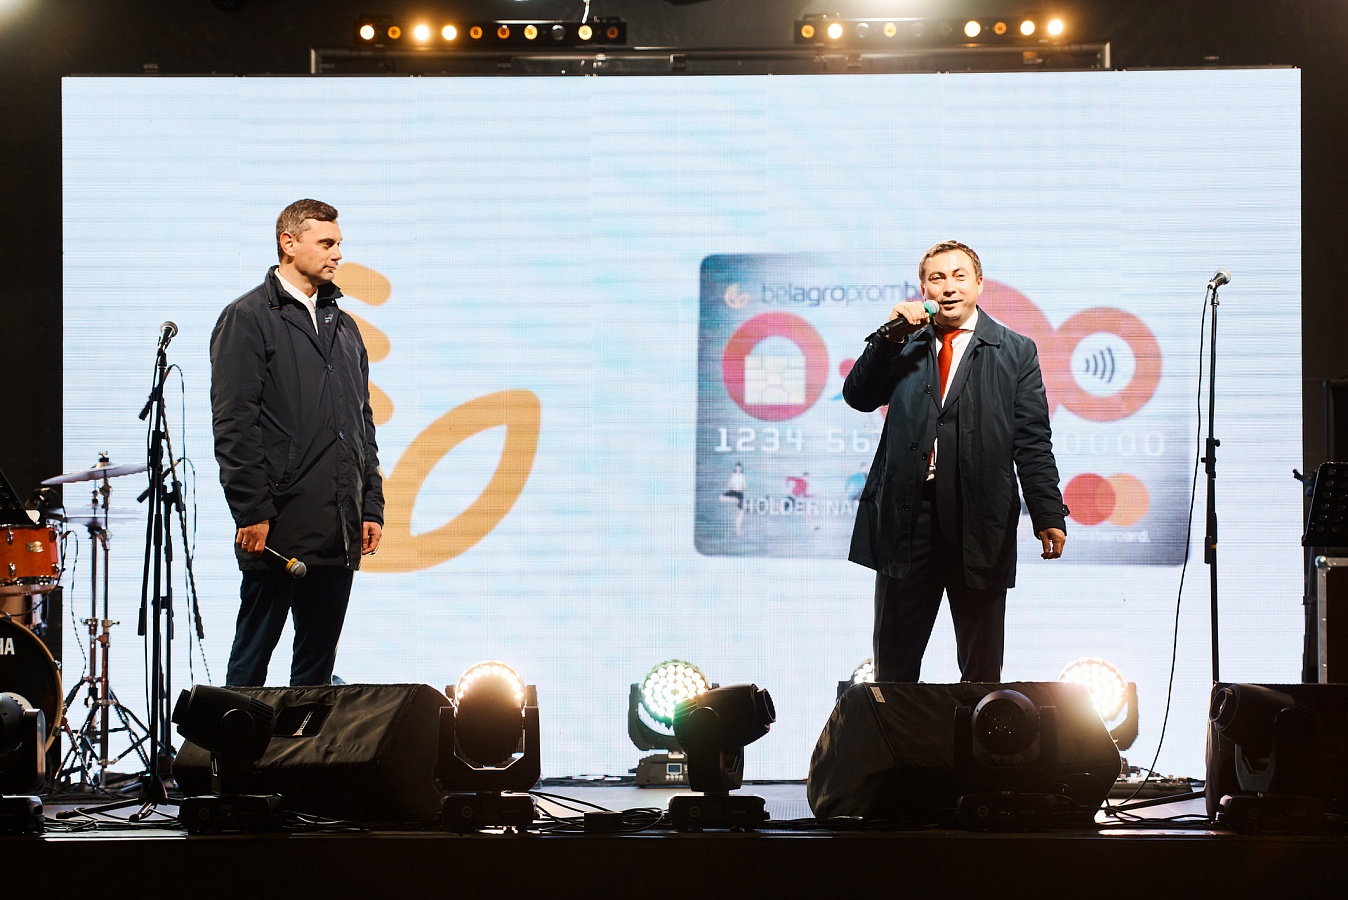    Директор компании Мasterсard в Беларуси Вадим Головчиц призвал всех присоединяться к движению с картой «O-GO!».